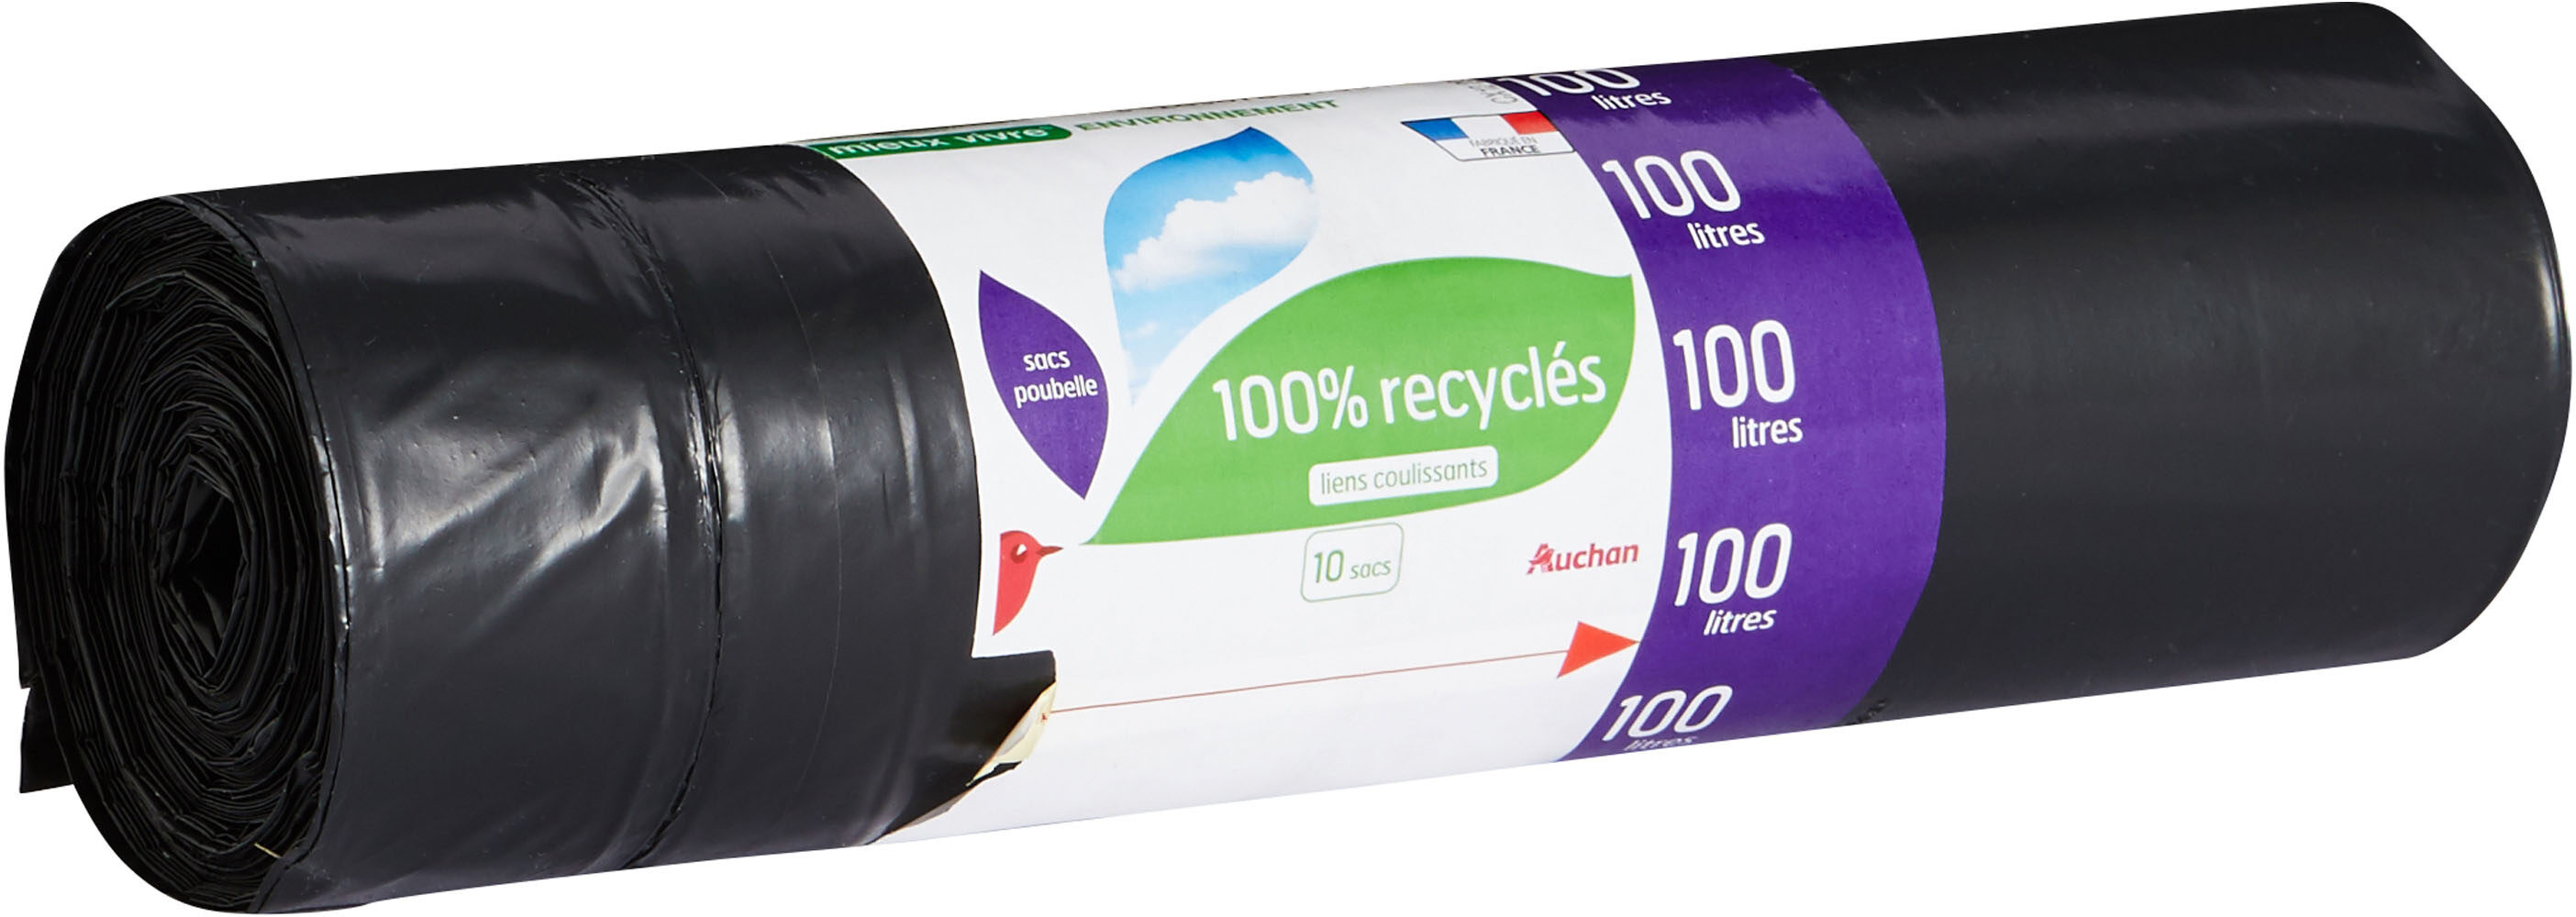 Auchan sacs poubelles eco recycles avec dessin 100l 10pcs - Produit - fr